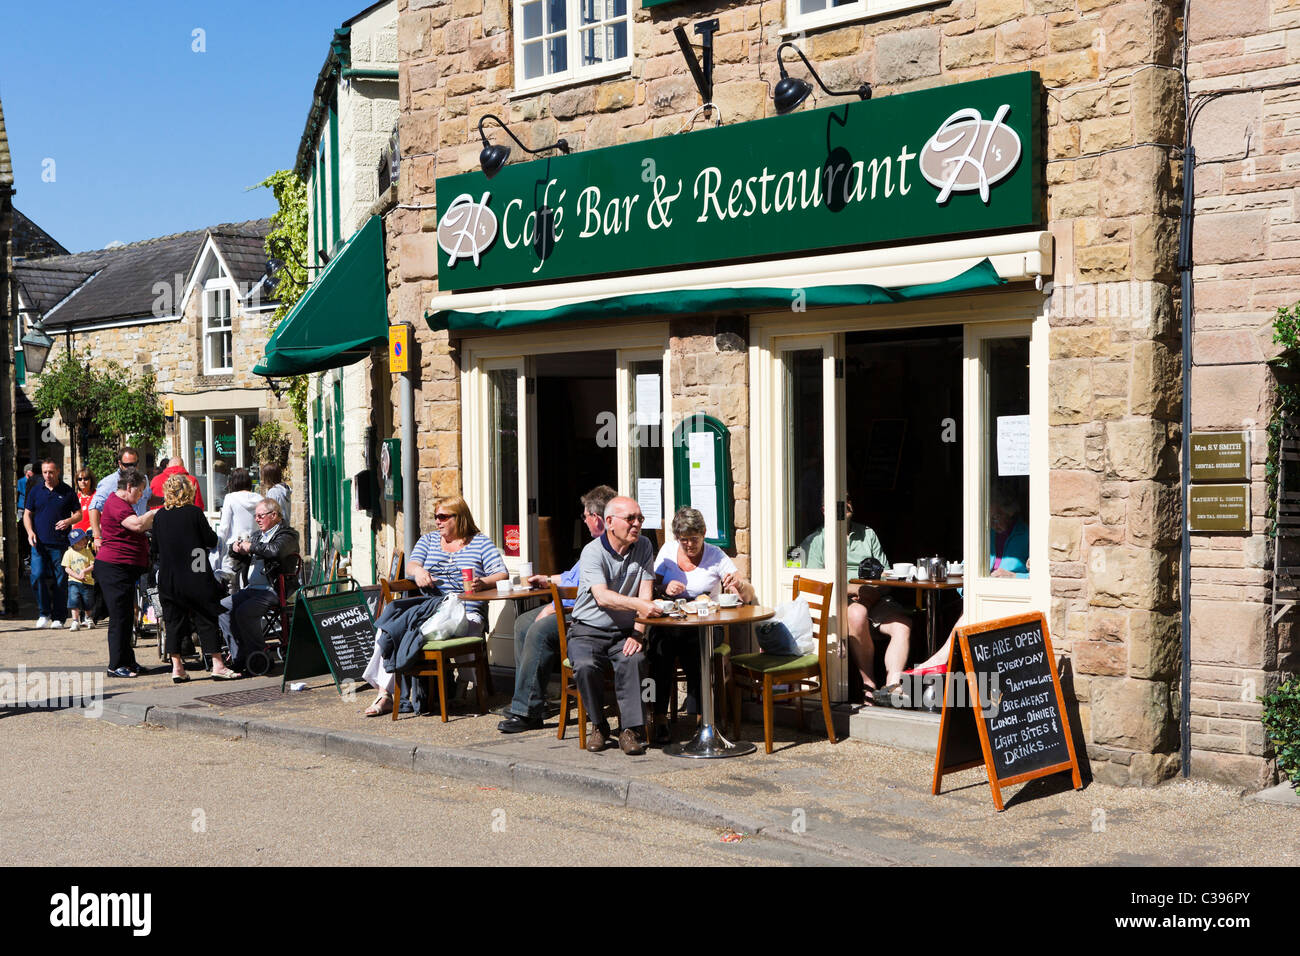 Cafe nel centro del paese, i primi di maggio weekend festivo, Bakewell, il Peak District, Derbyshire, Regno Unito Foto Stock